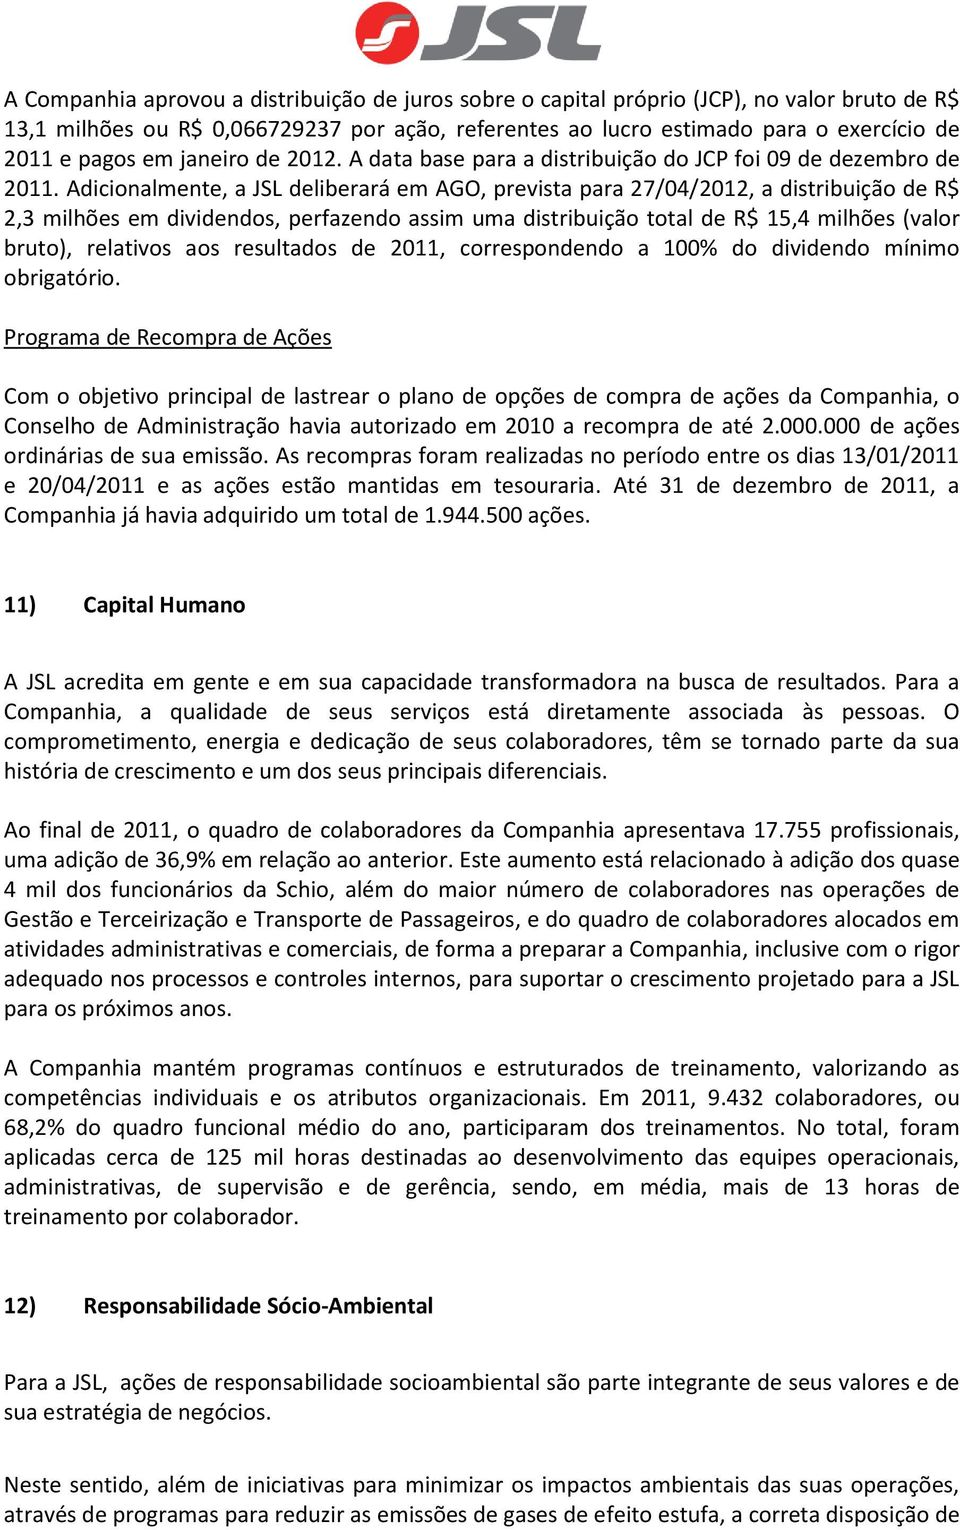 Adicionalmente, a JSL deliberará em AGO, prevista para 27/04/2012, a distribuição de R$ 2,3 milhões em dividendos, perfazendo assim uma distribuição total de R$ 15,4 milhões (valor bruto), relativos